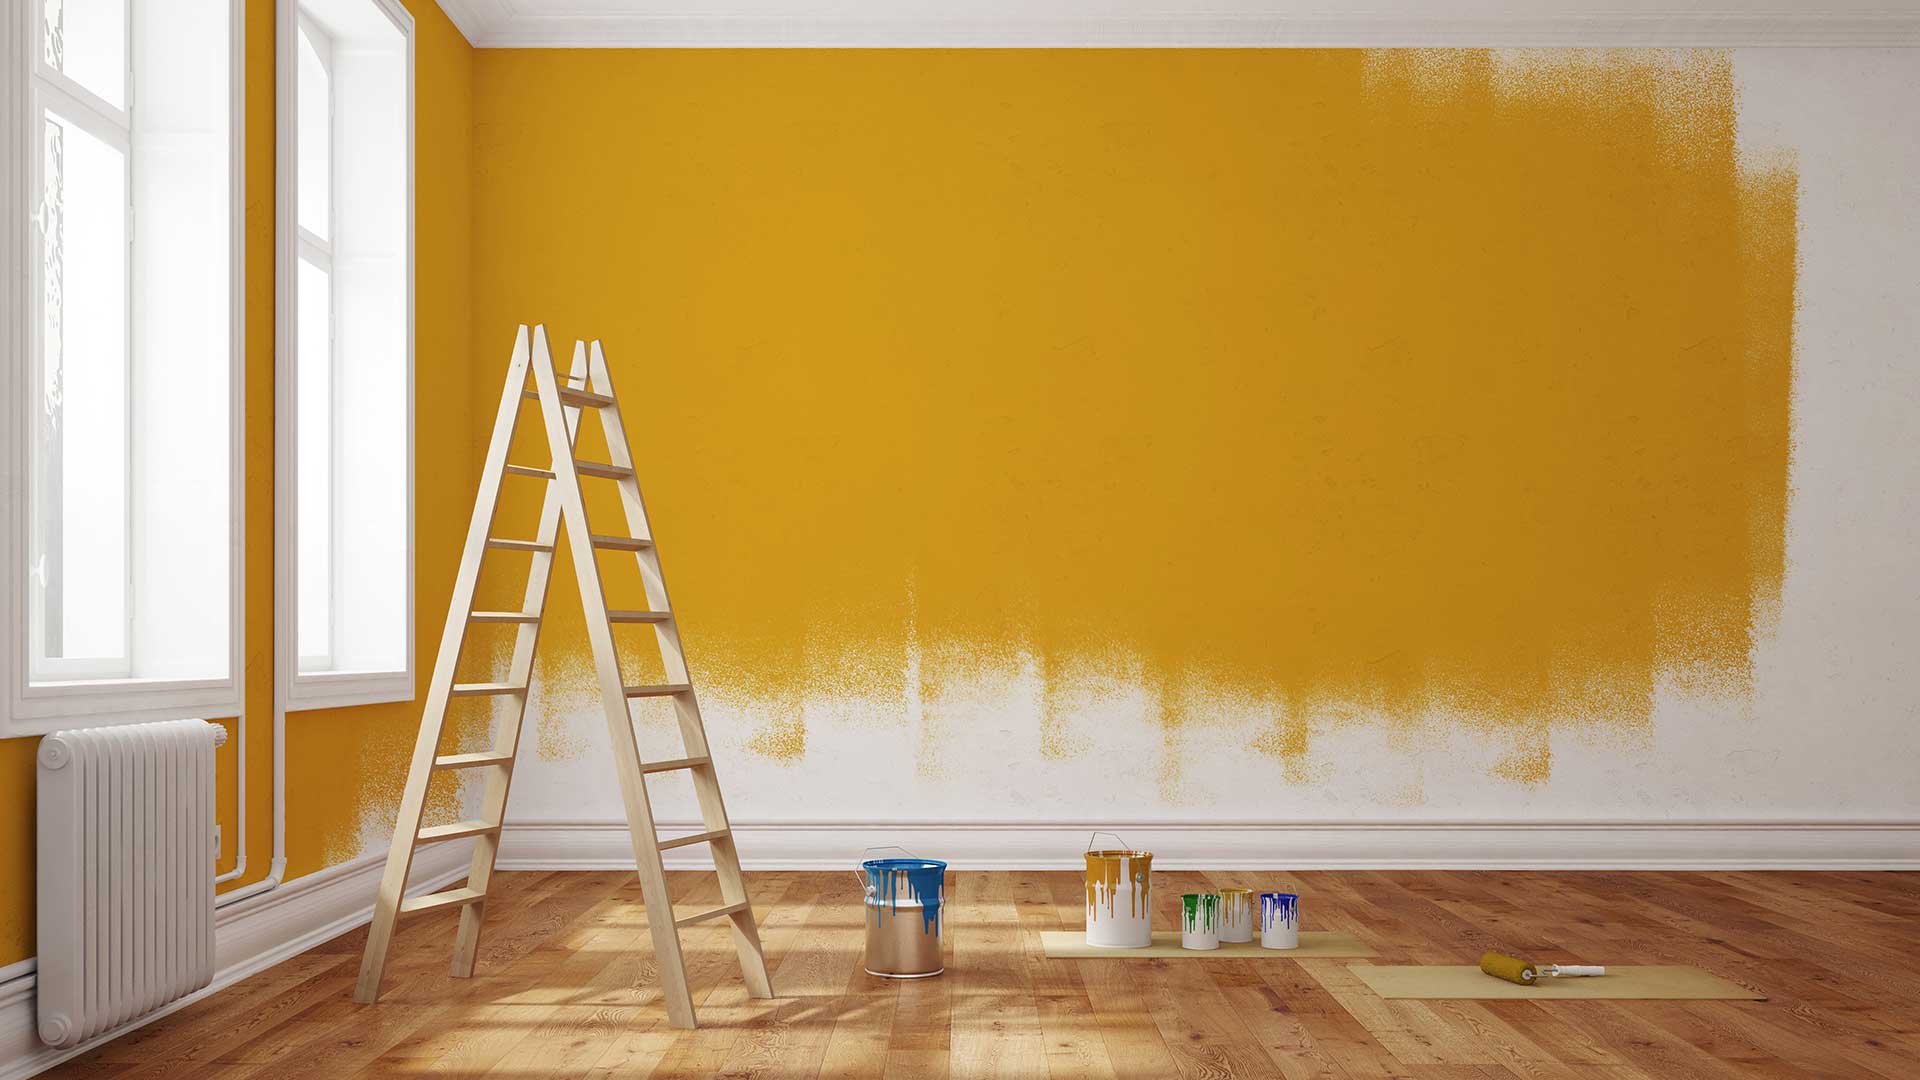 pomieszczenie w trakcie malowania ścian na żółty kolor -  w 2021